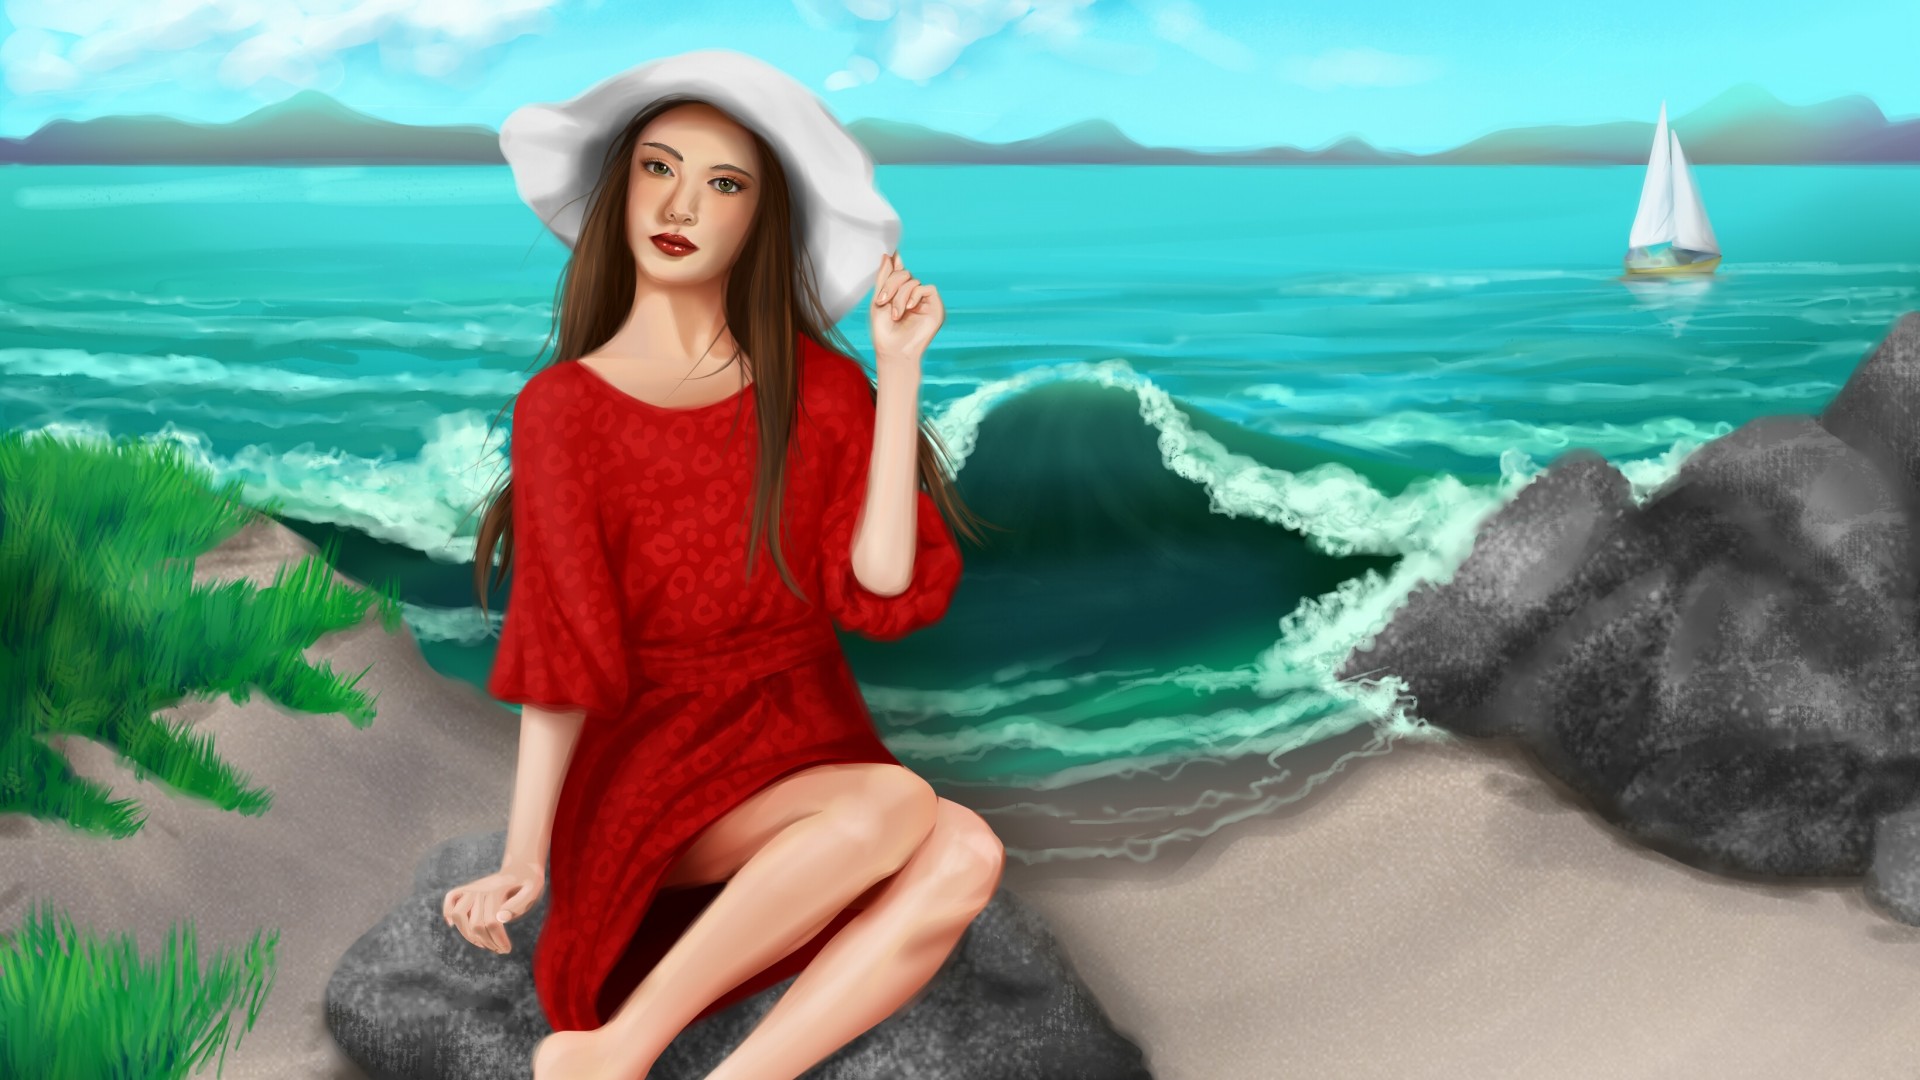 女孩,帽子,红色裙子,唯美,大海,海边,小船,精美绘画壁纸